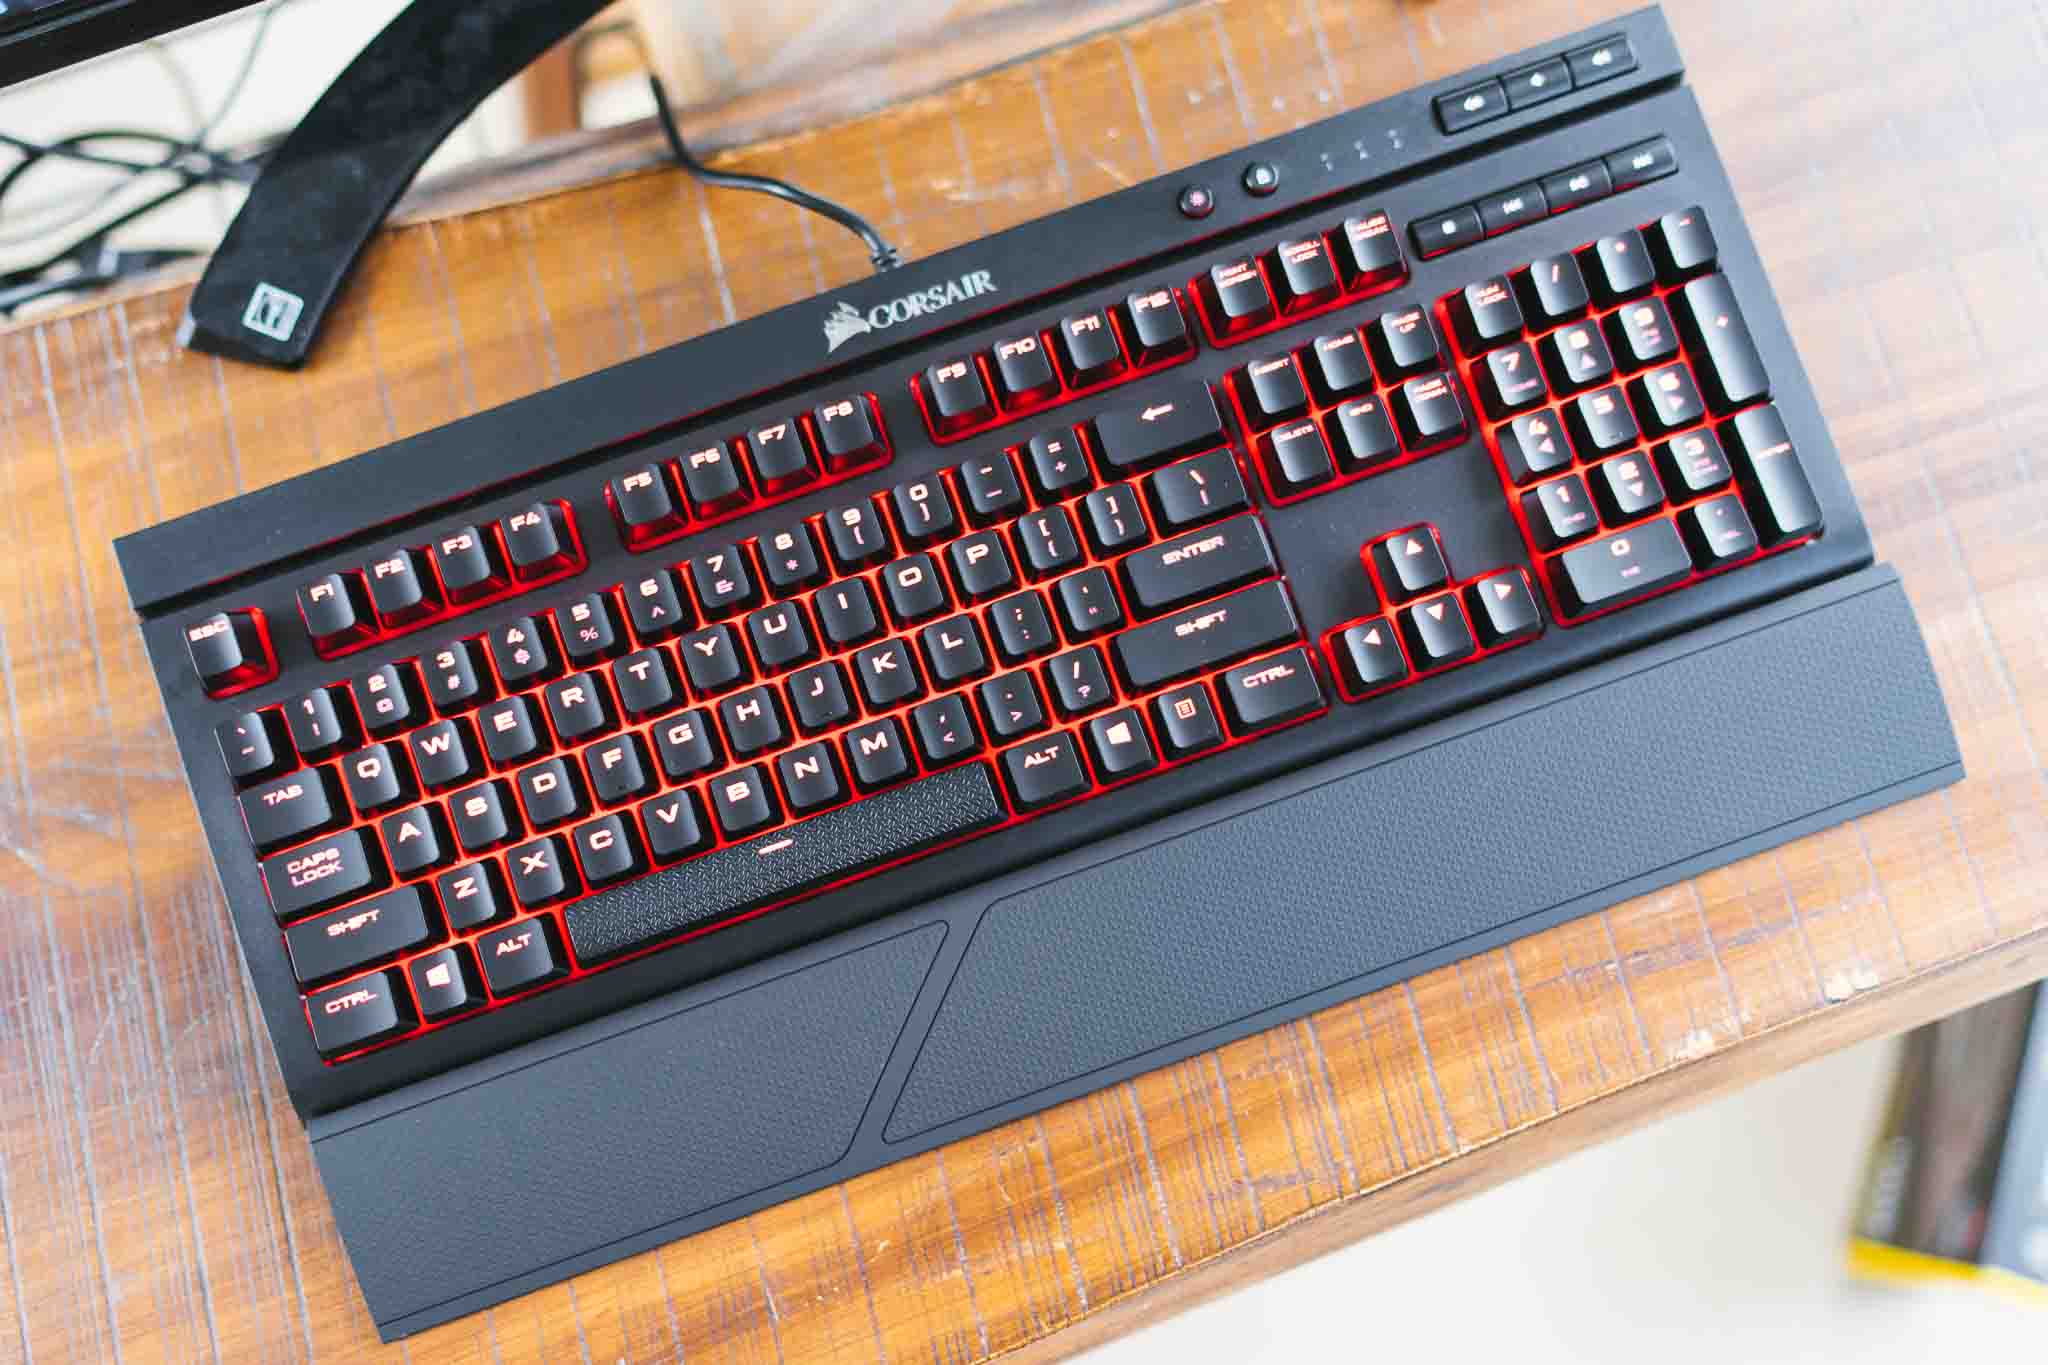 [Computex 2017] Trên tay bàn phím cơ Corsair K68: Cherry MX đỏ, chống bụi và nước, giá 100 USD